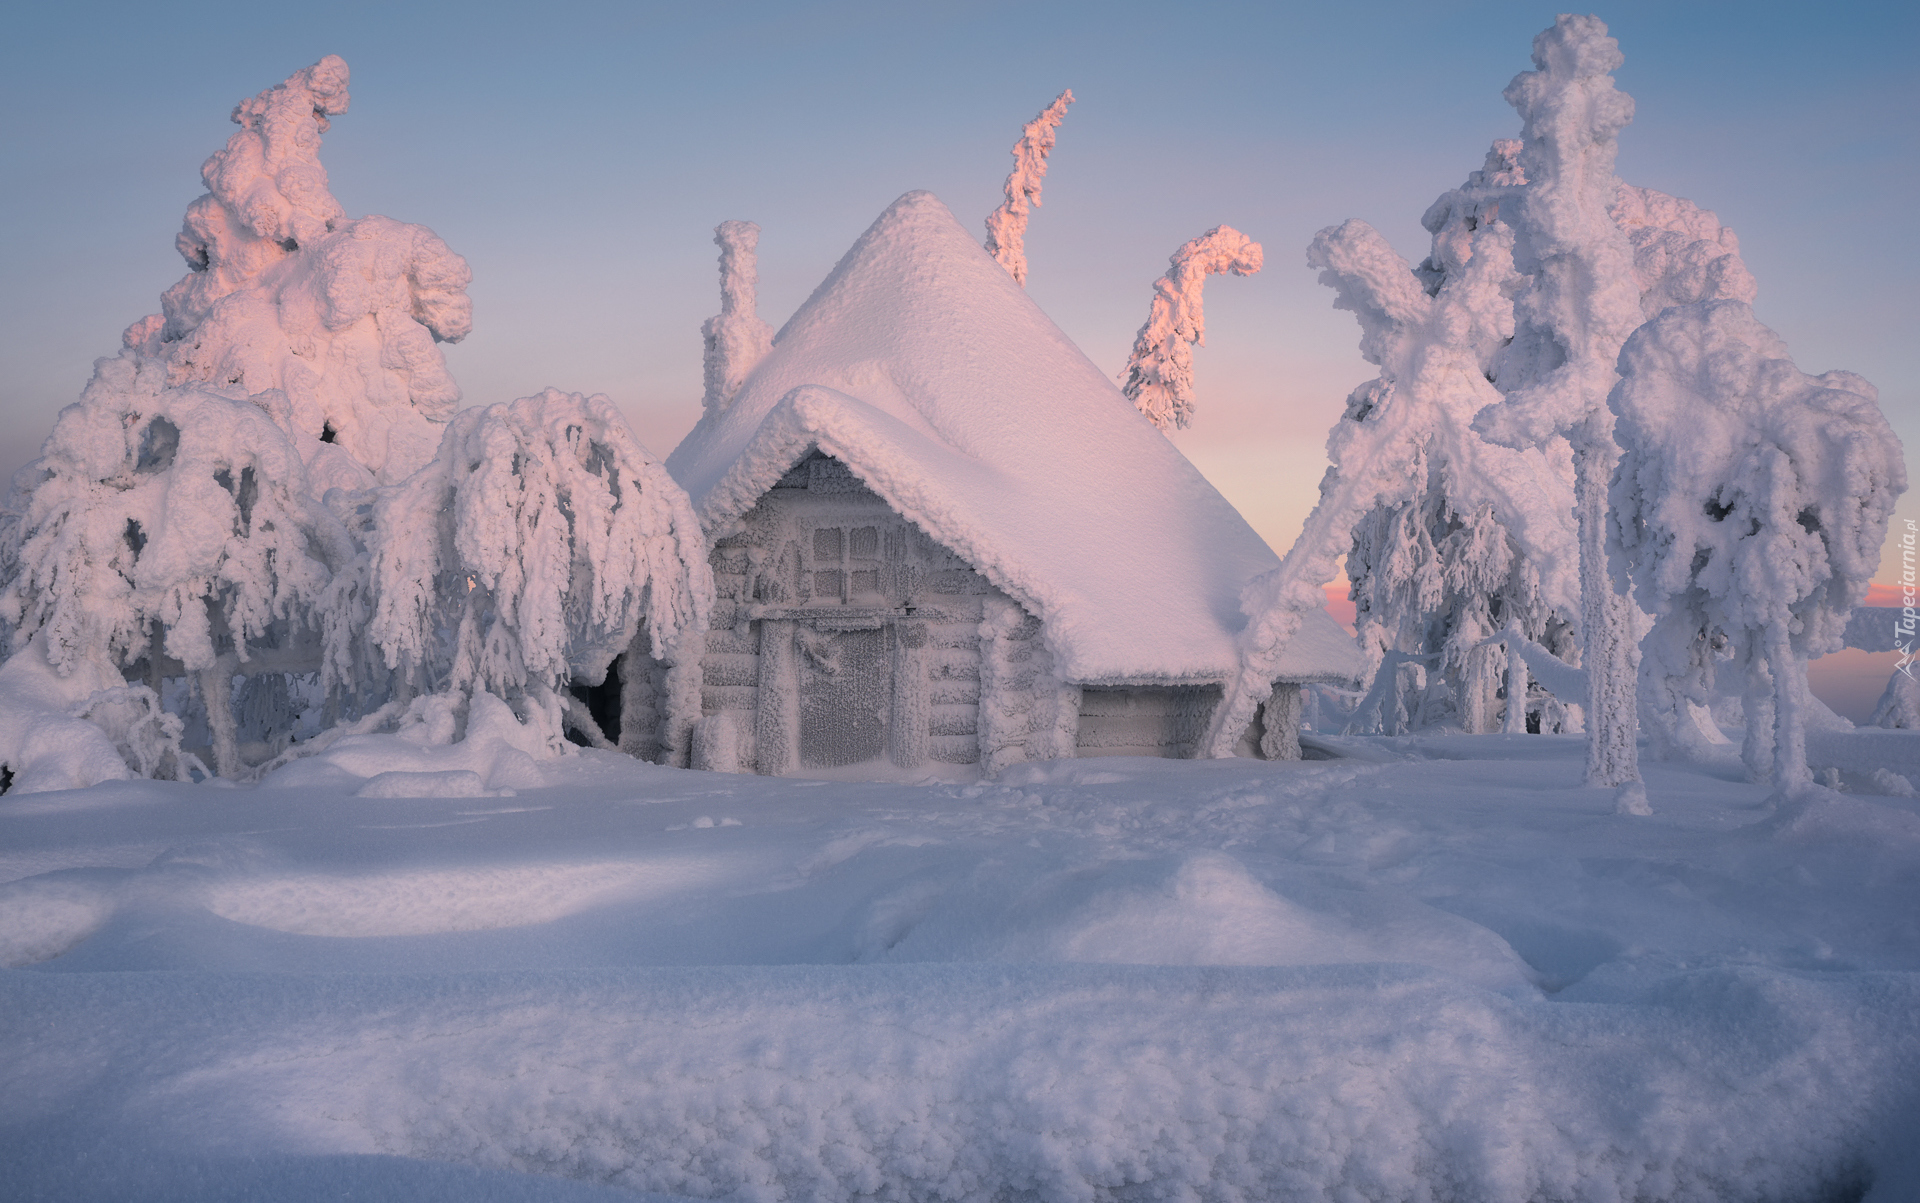 Zima, Ośnieżony, Dom, Drzewa, Śnieg